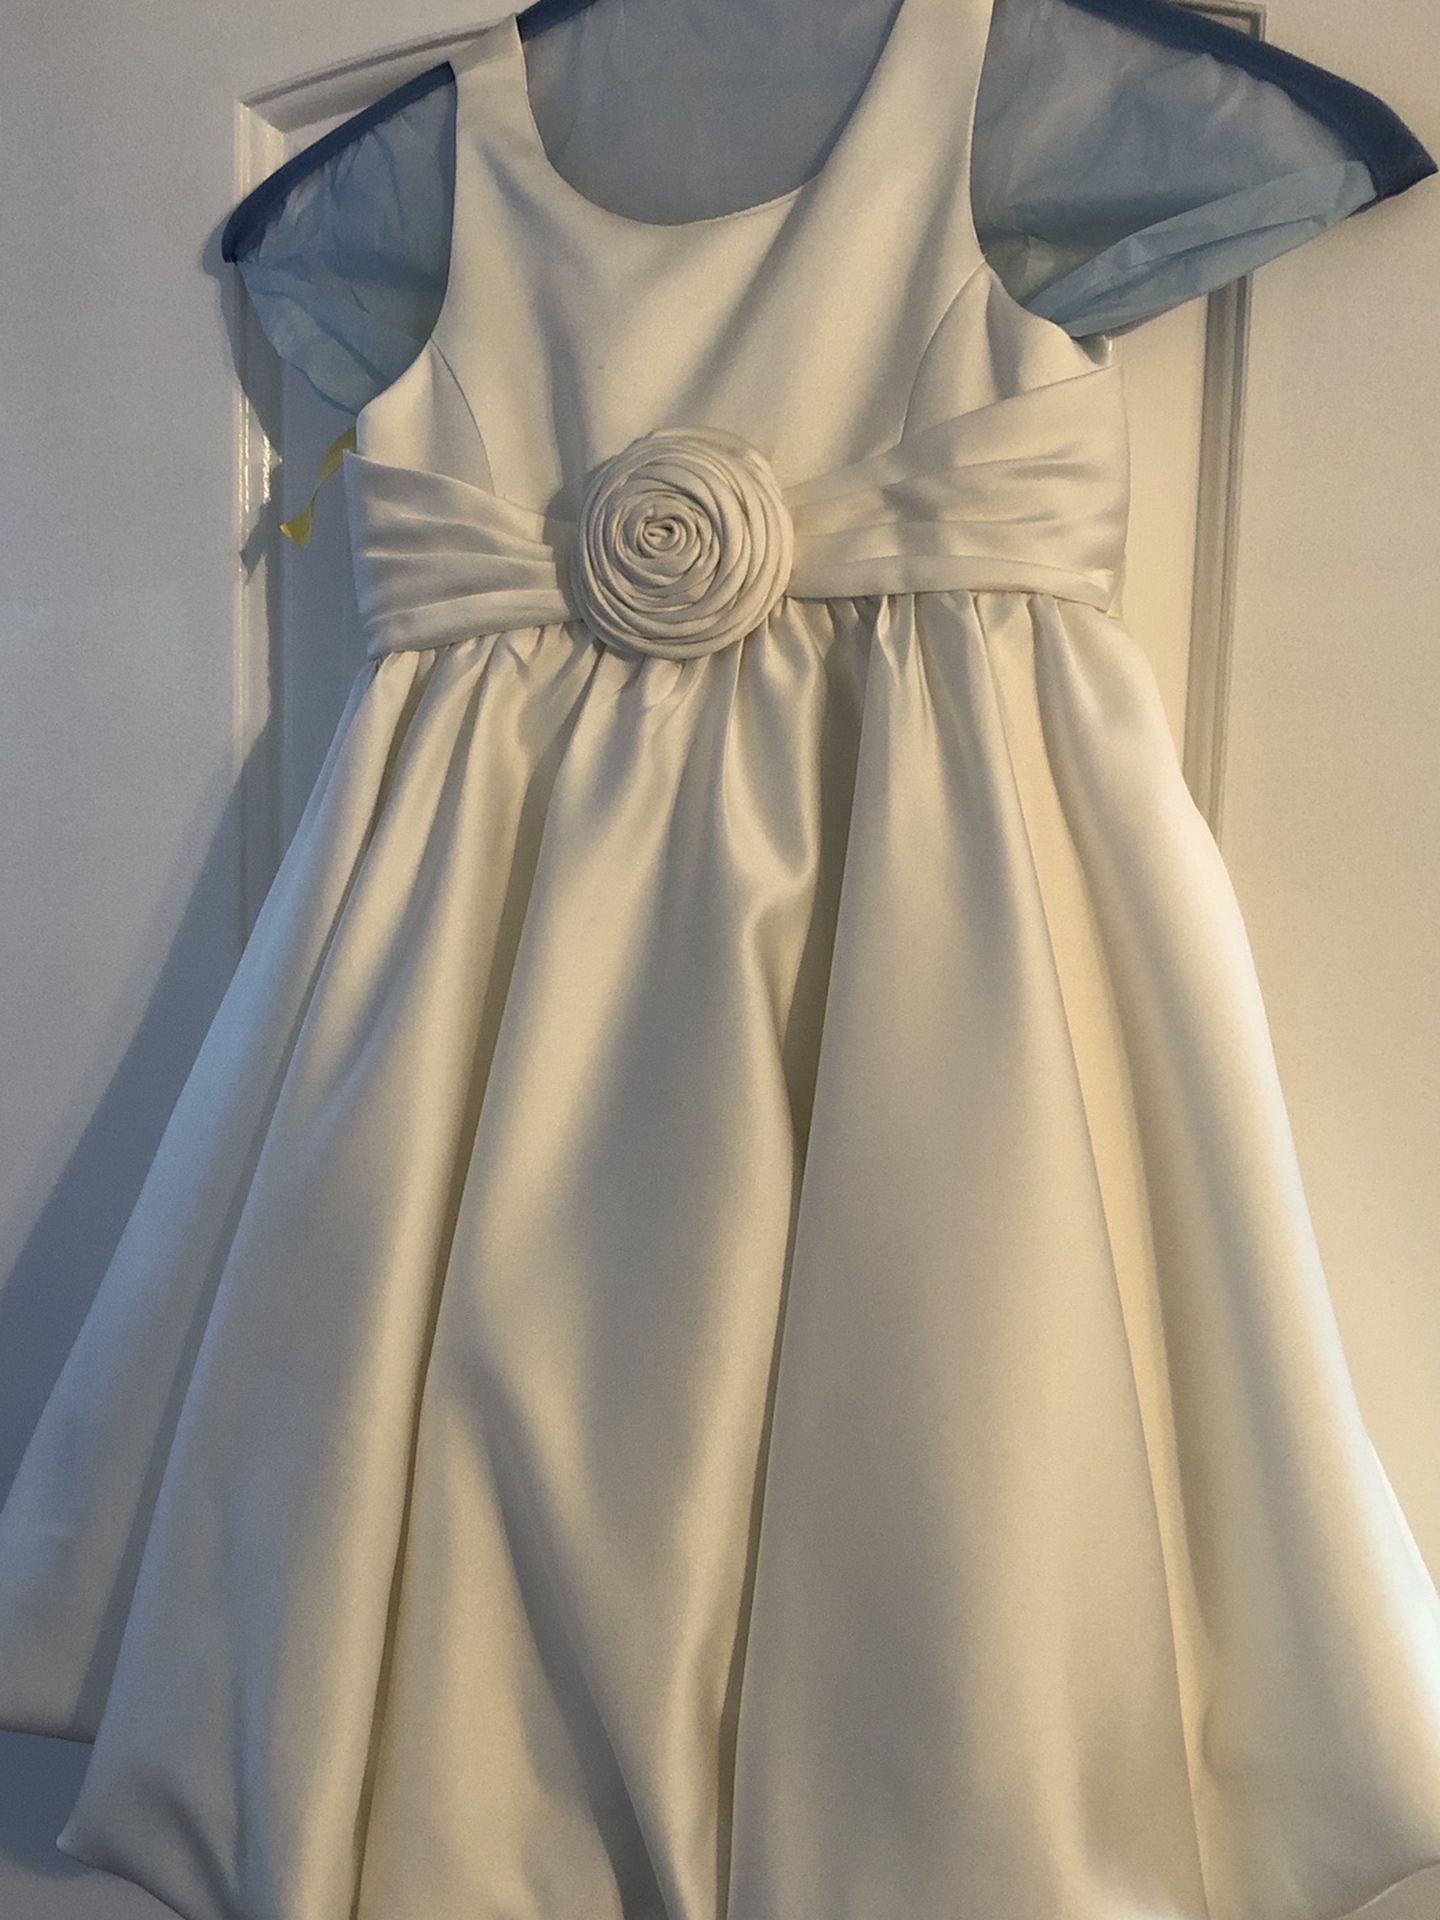 Flower Girl Premium Dress - Size 3T